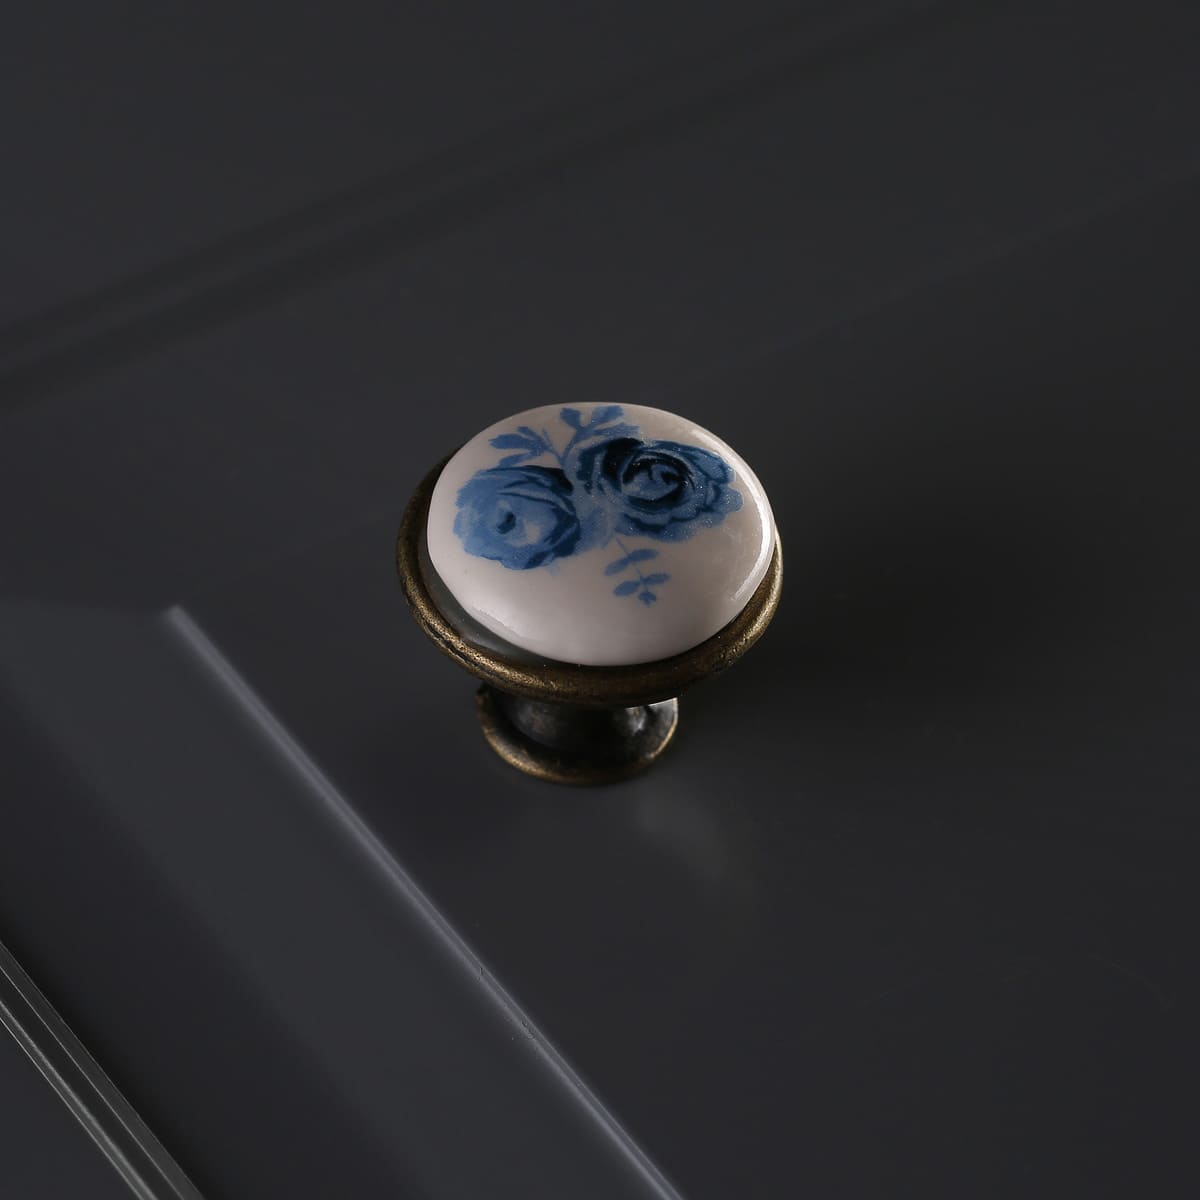 Ручка мебельная керамика кнопка GP-0728-J4-A (синяя роза) старое золото GTV 14094 Ручка мебельная керамика кнопка GP-0728-J4-A (синяя роза) старое золото - фото 5